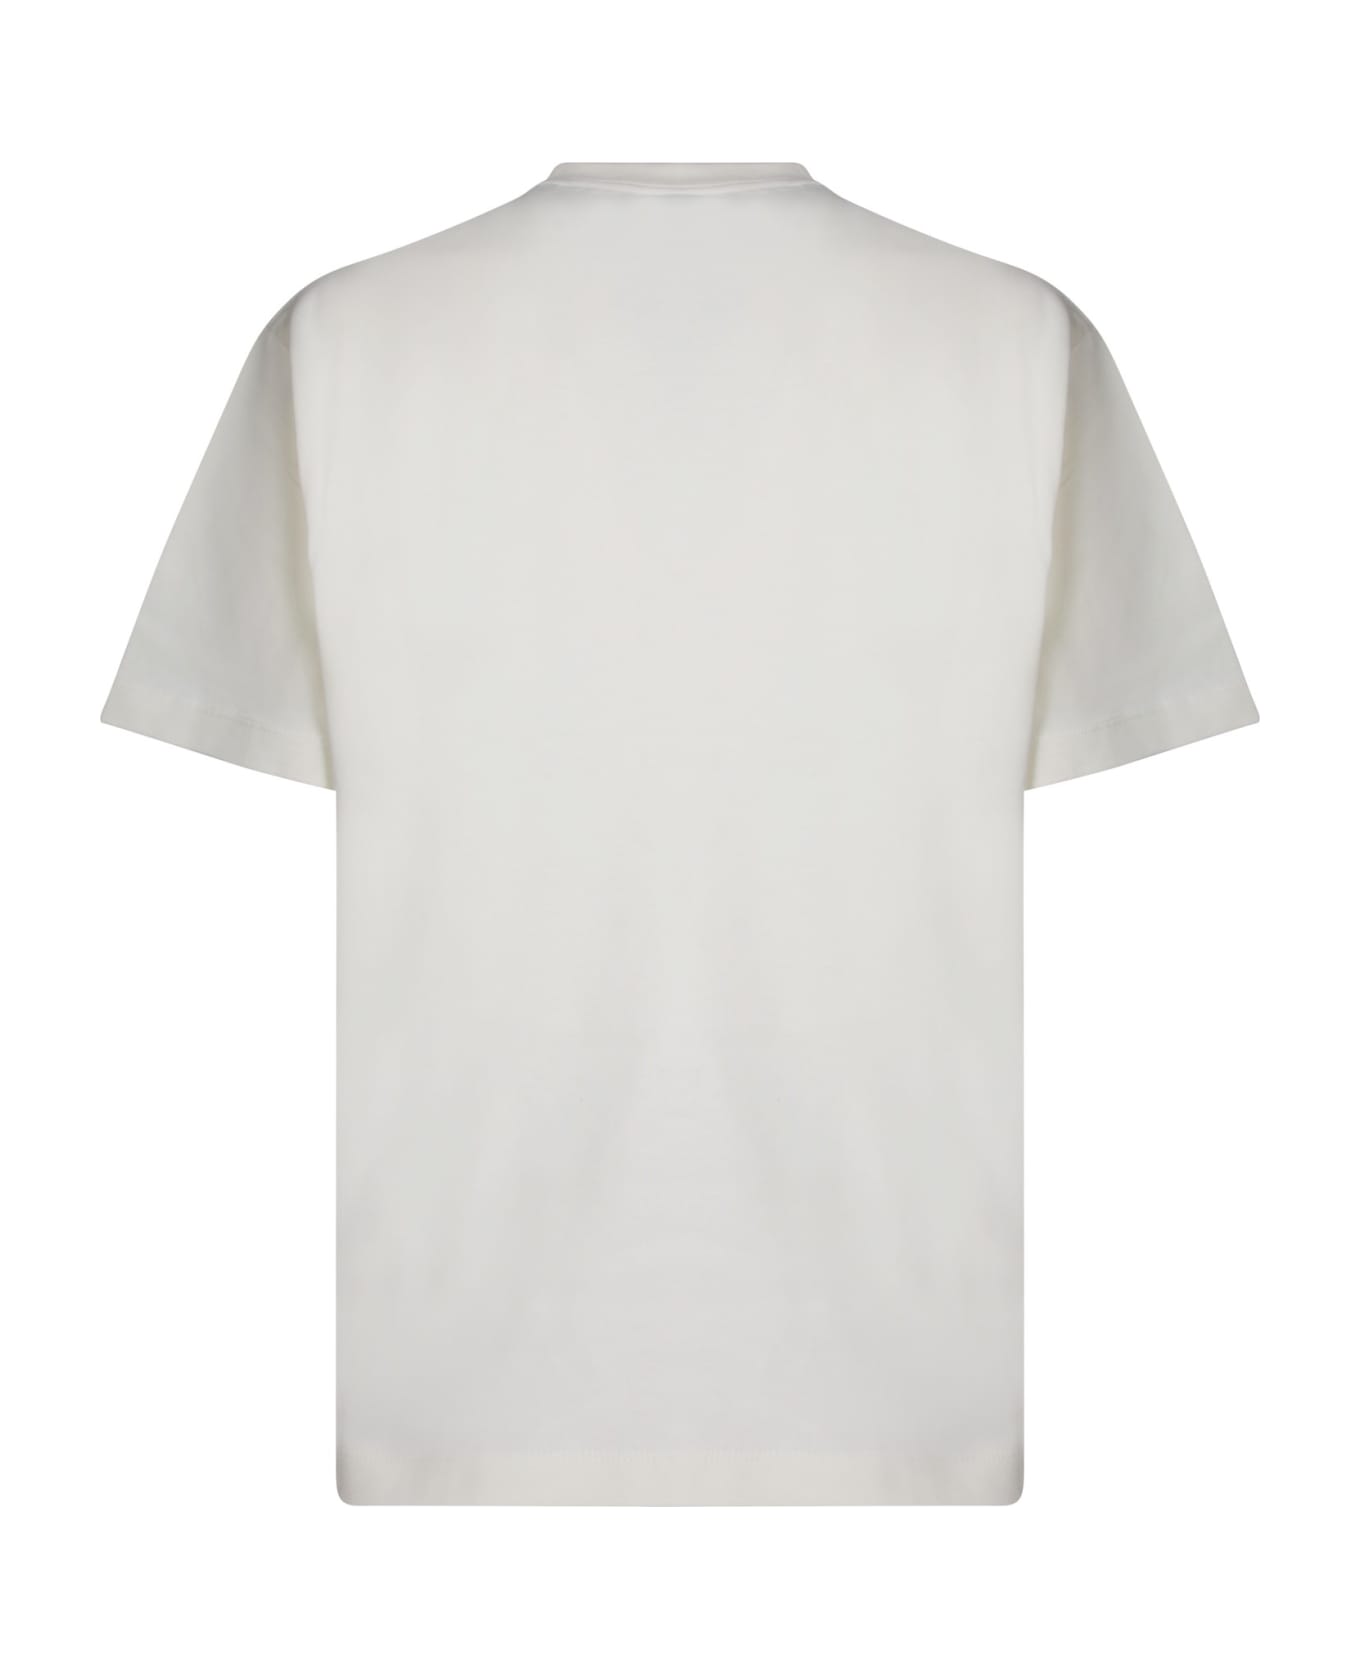 ROA Logo White T-shirt - White